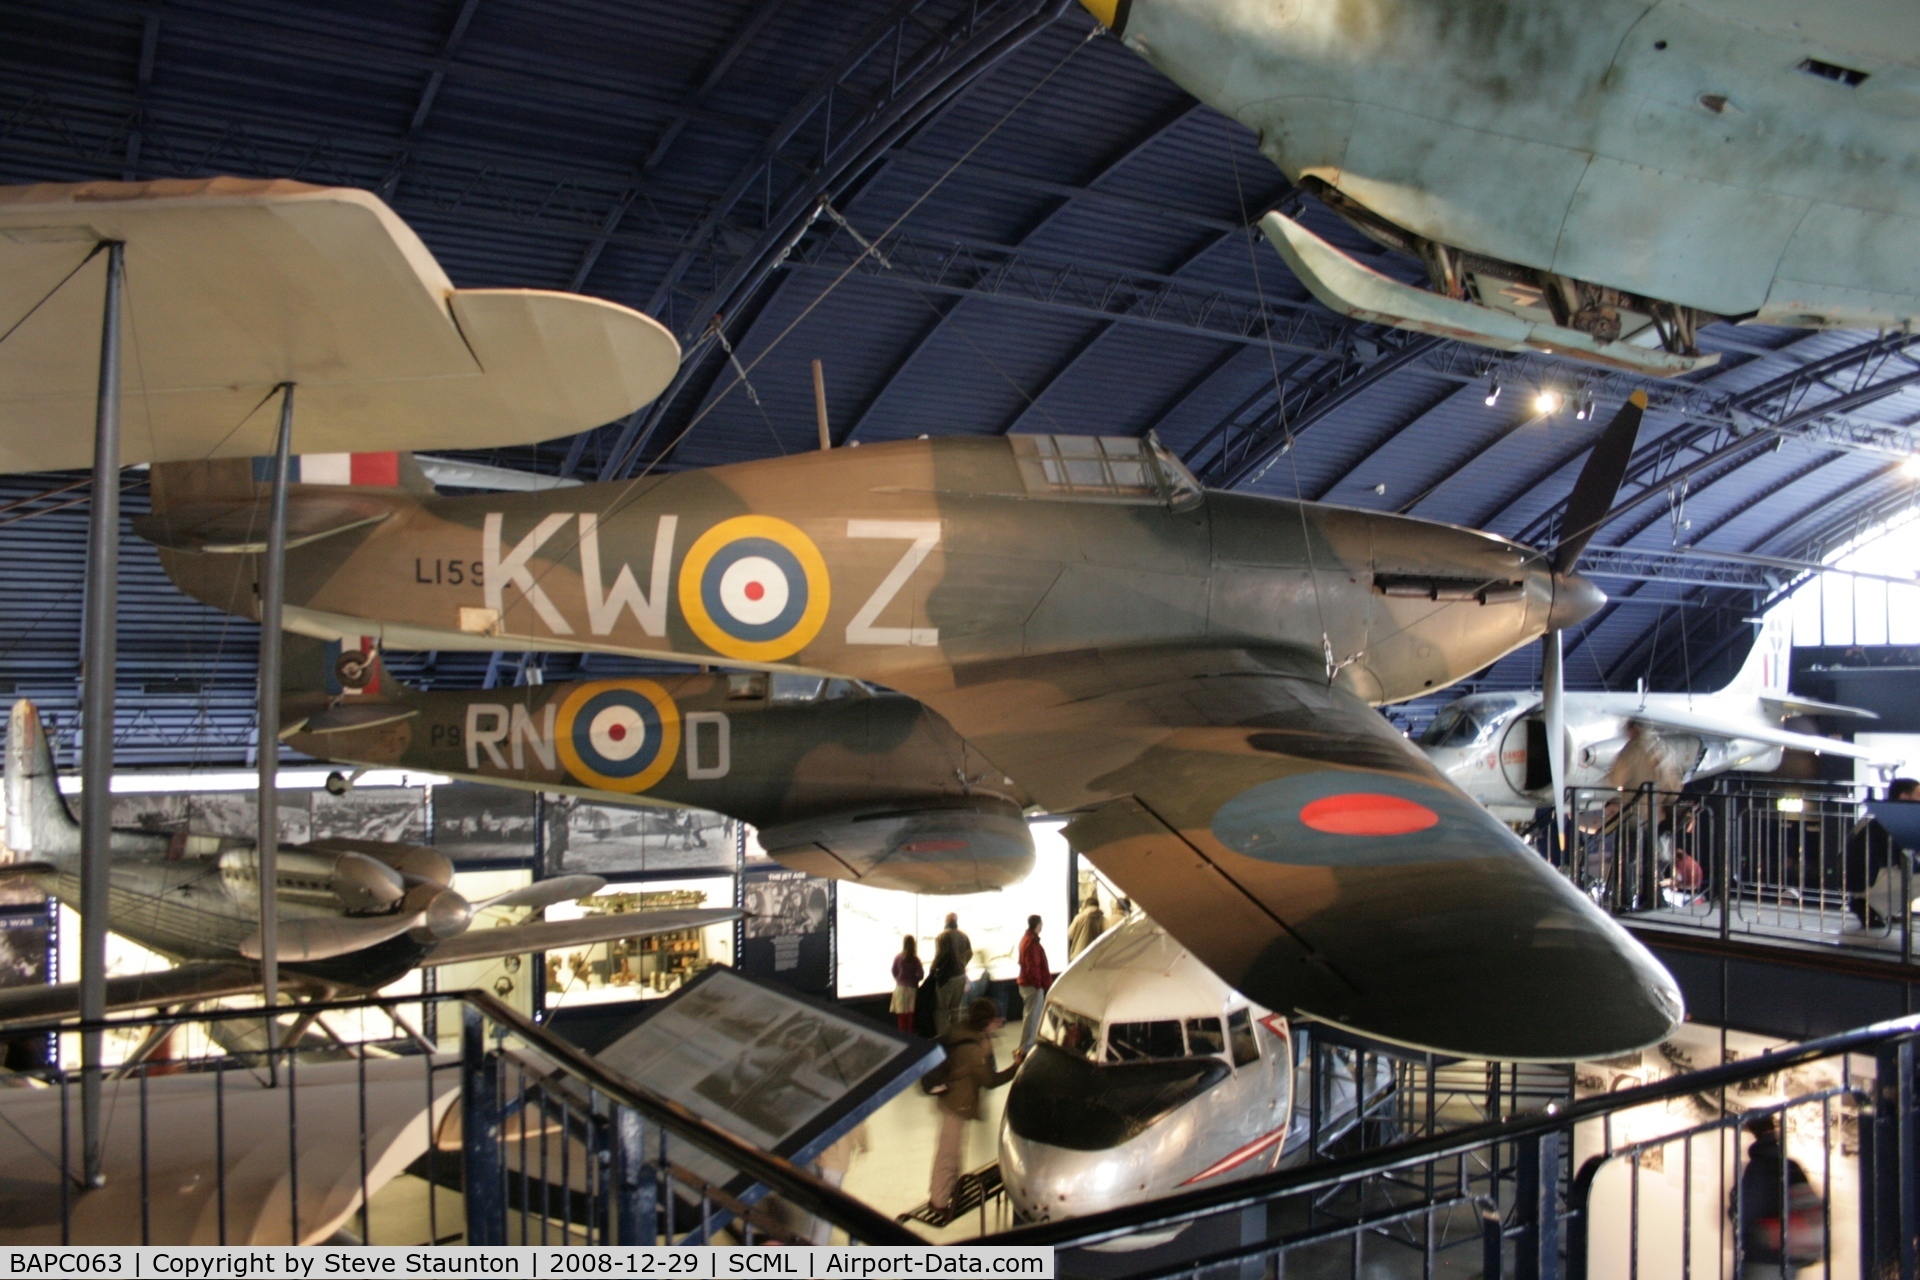 BAPC063, Hawker Hurricane Replica C/N BAPC.063, Taken at the Science Museum, London. December 2008